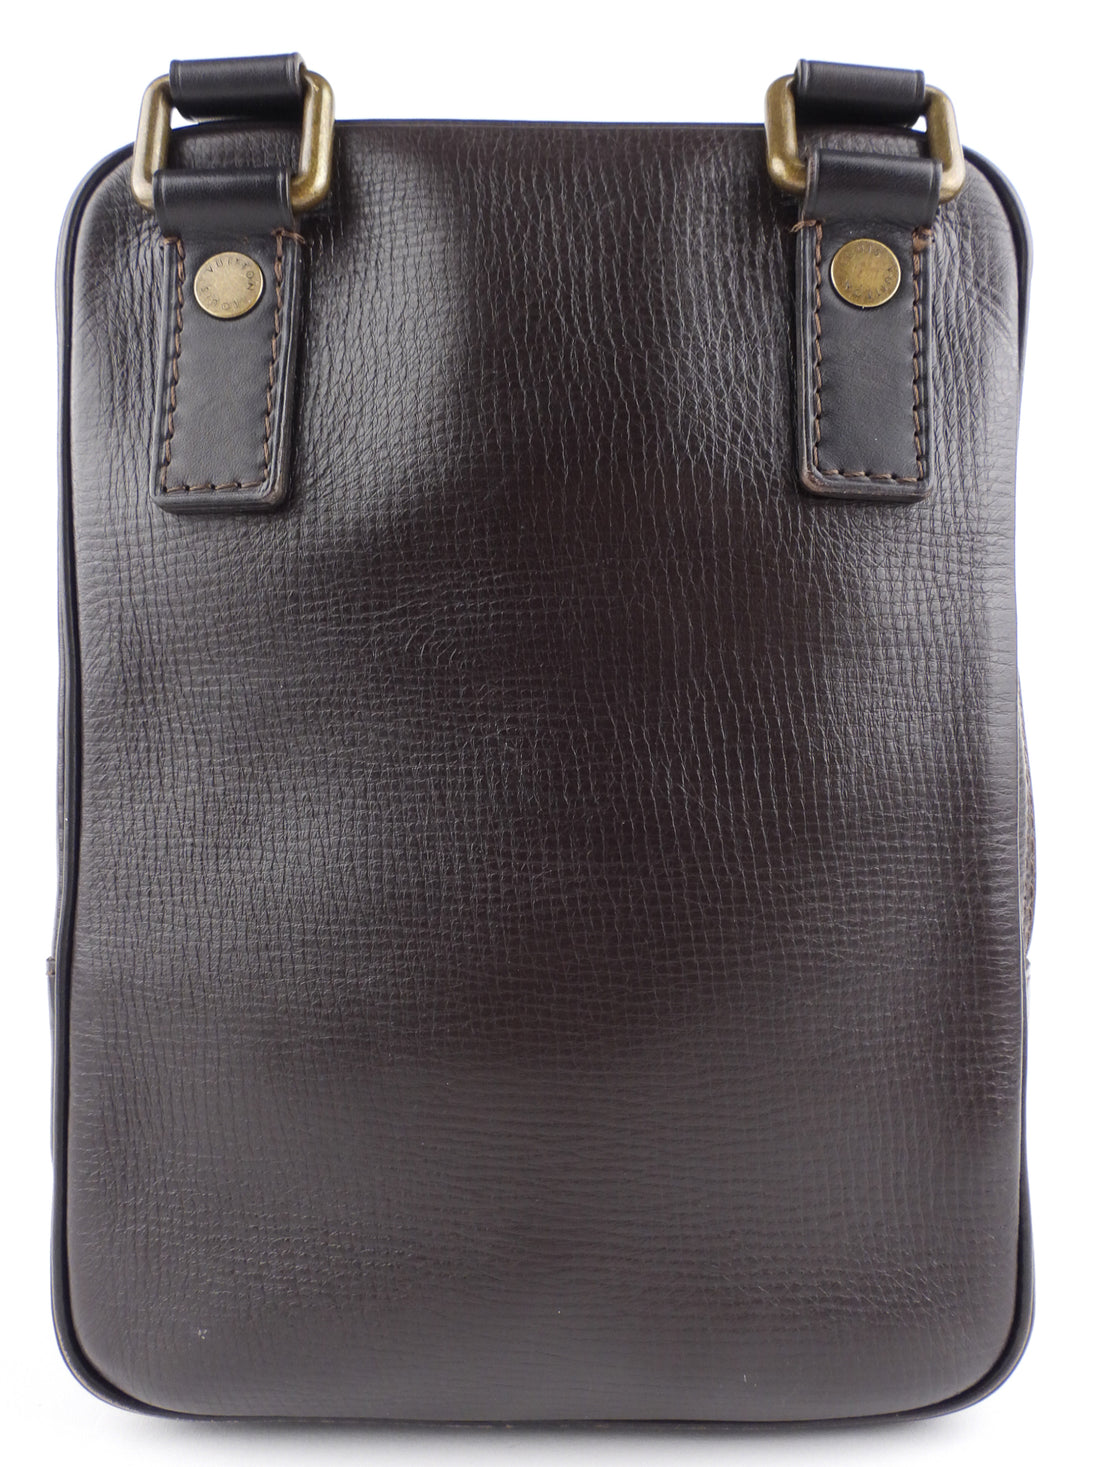 Louis Vuitton Messenger Bag Brown - THE PURSE AFFAIR